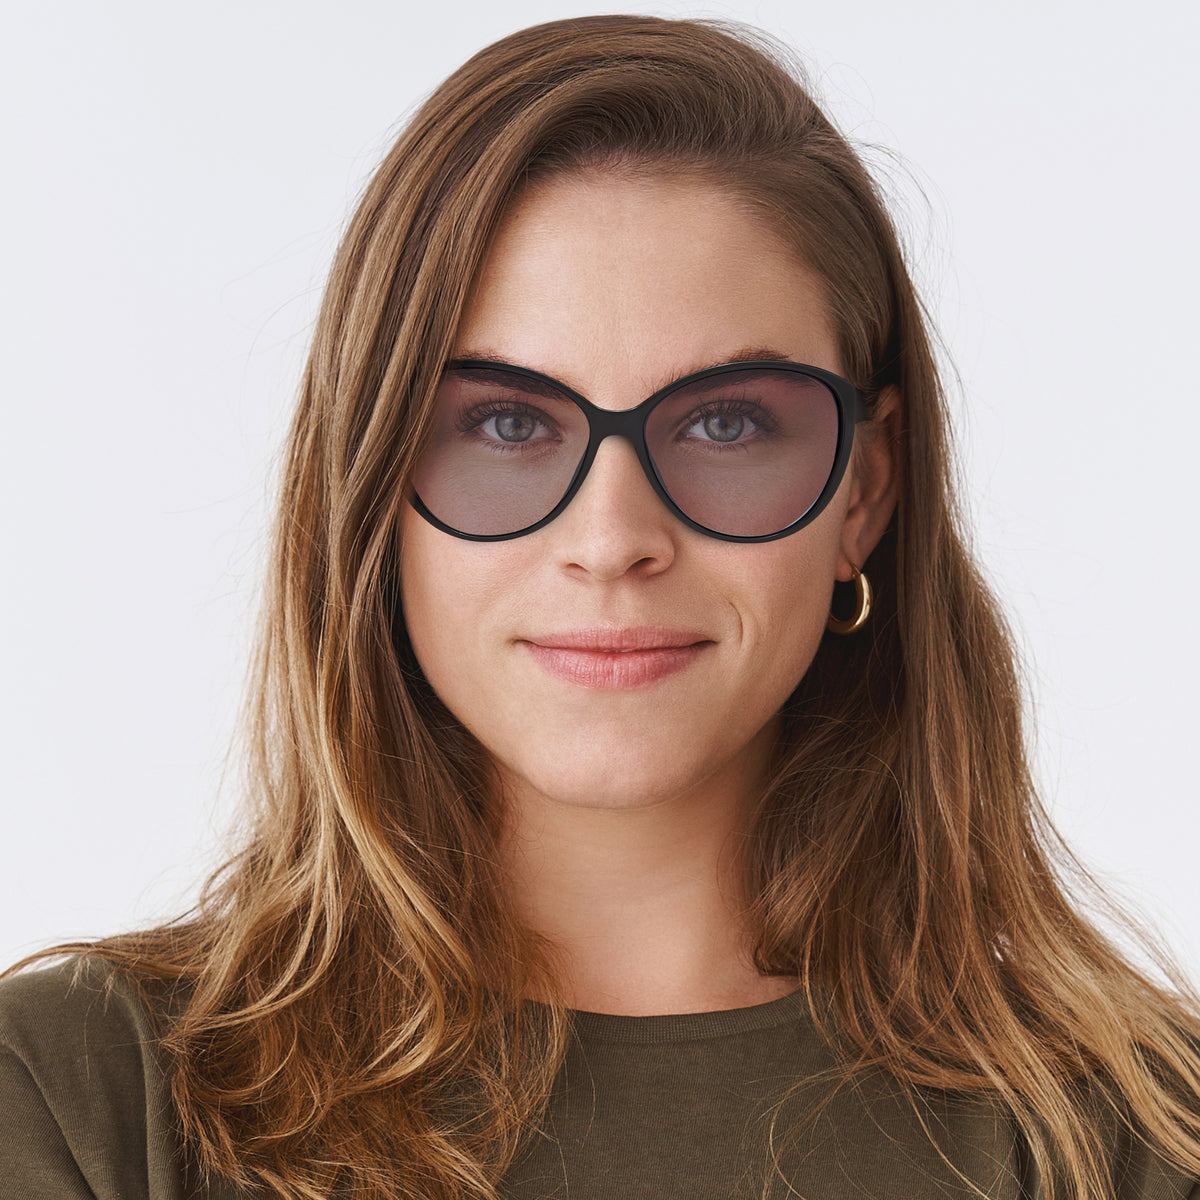 Caroline - Black/Gray Lens - Sunglasses